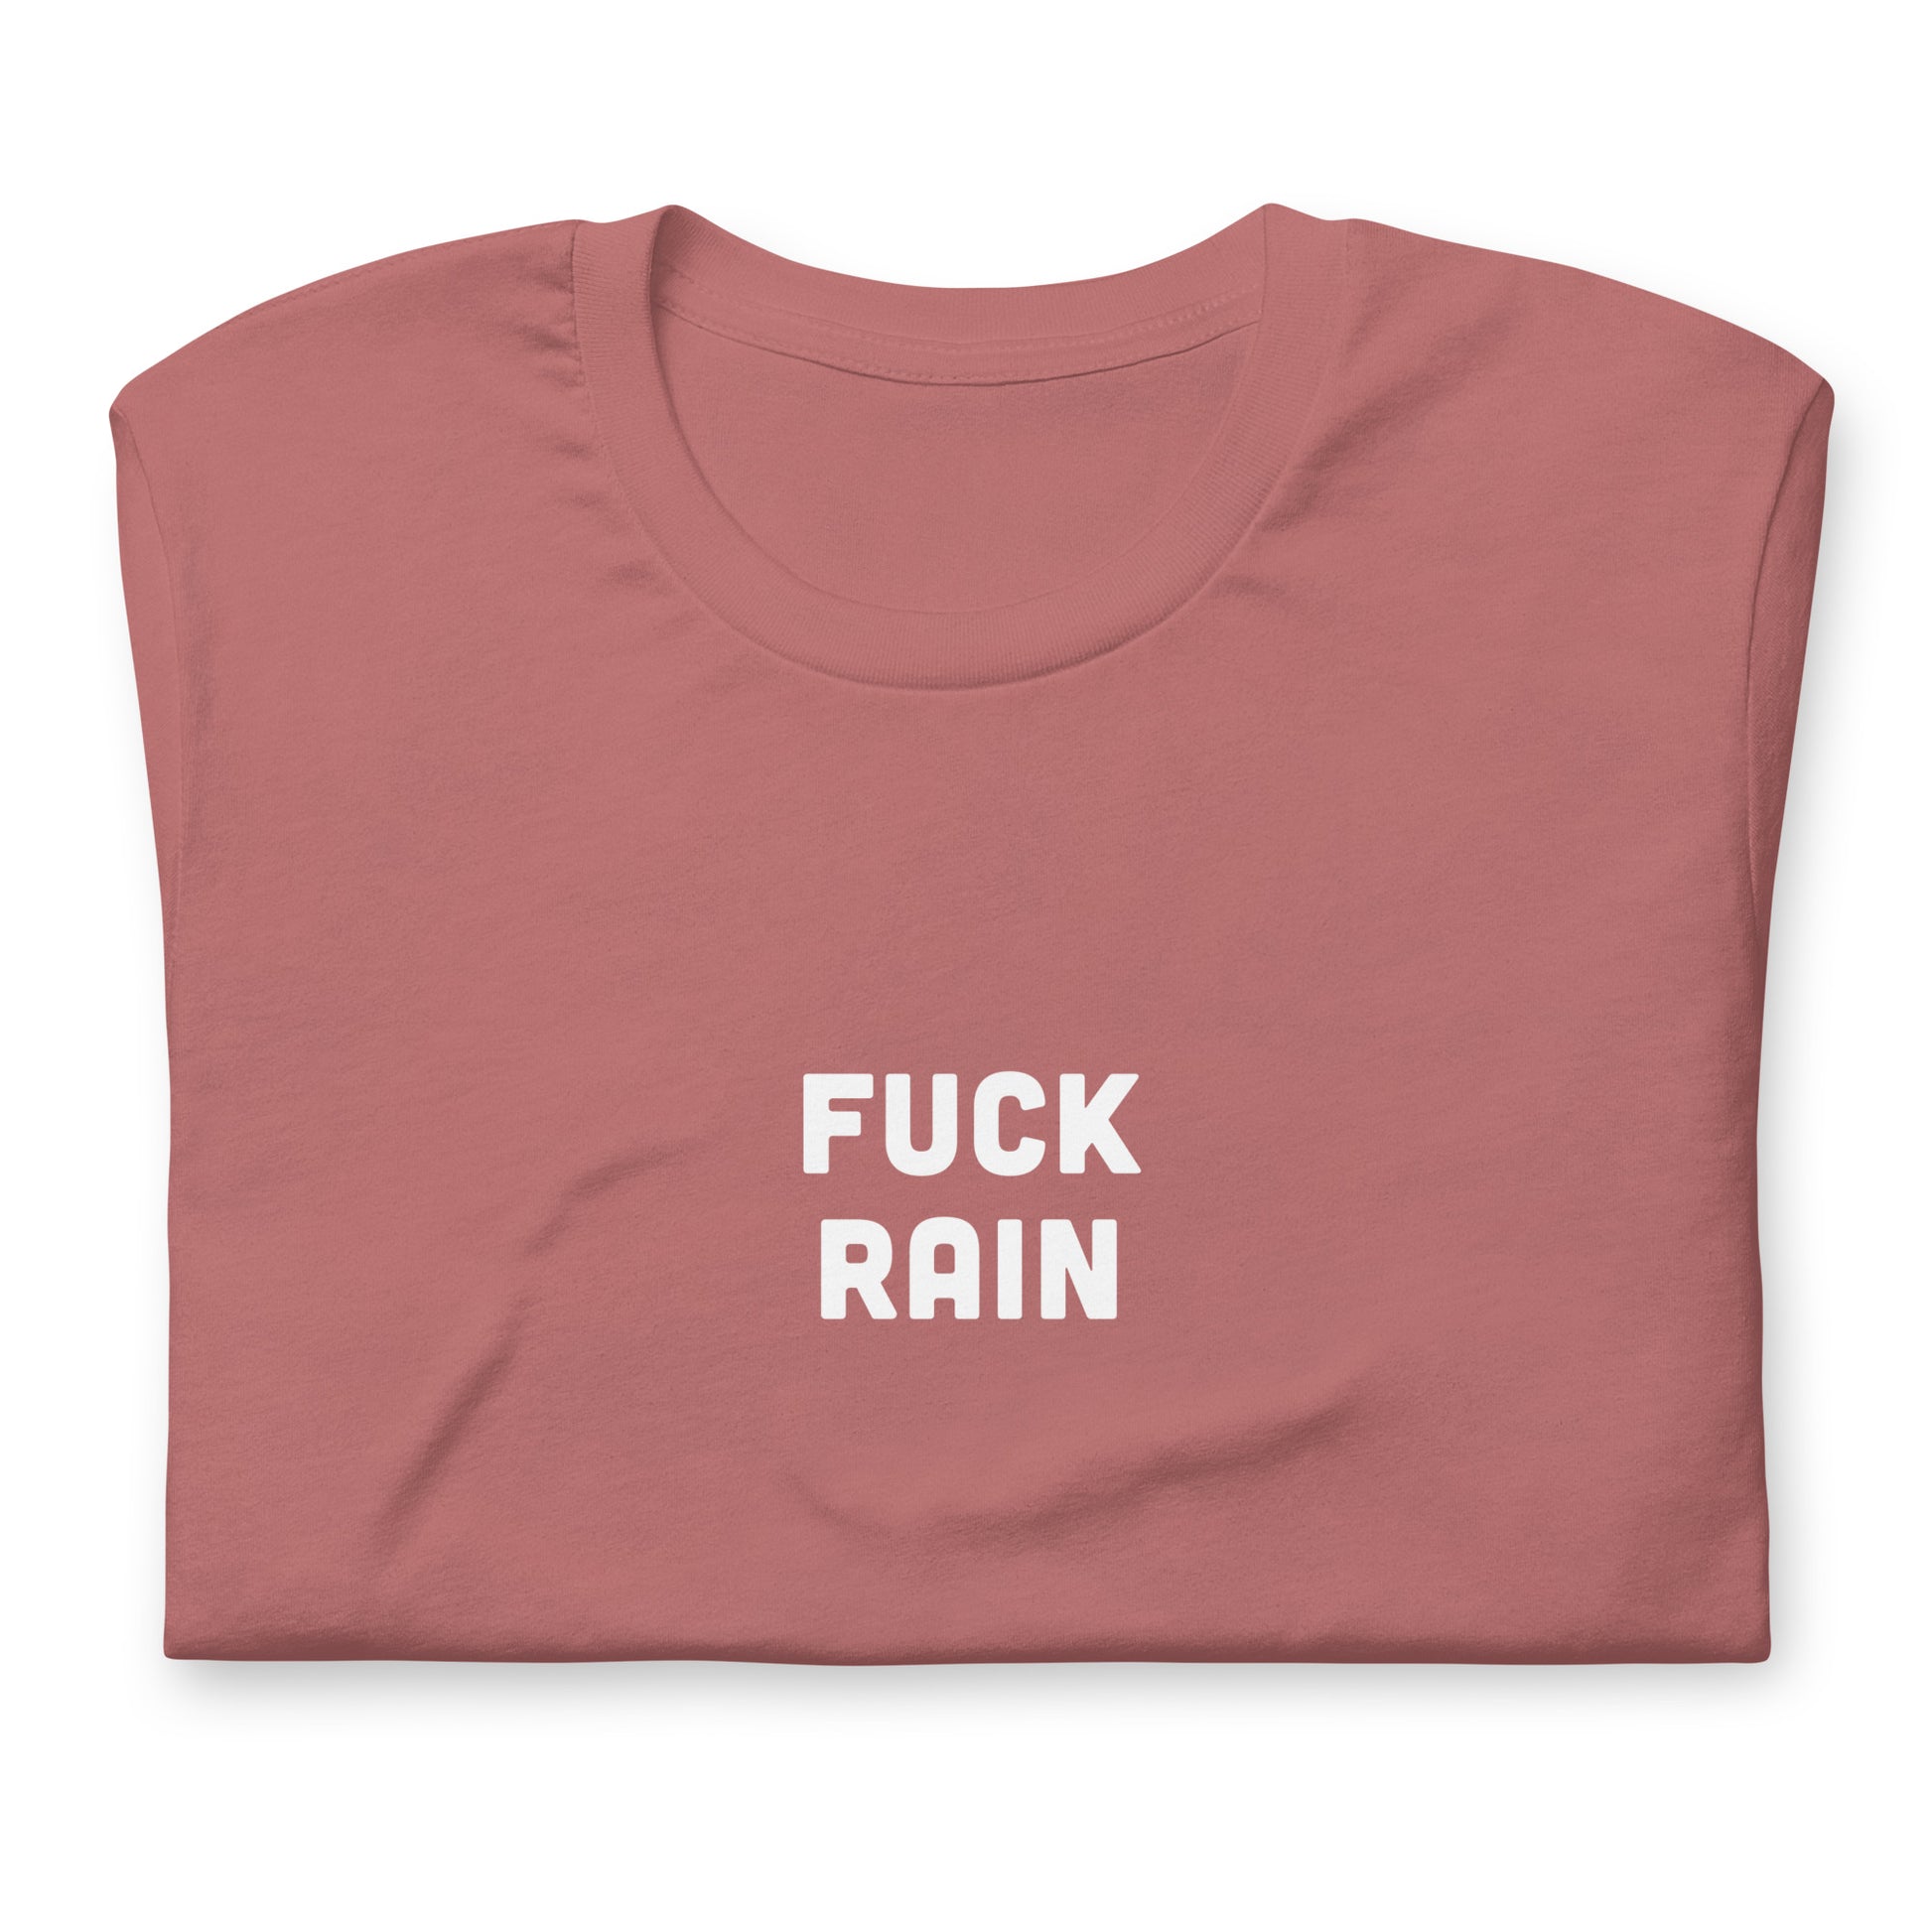 Fuck Rain T-Shirt Size 2XL Color Navy